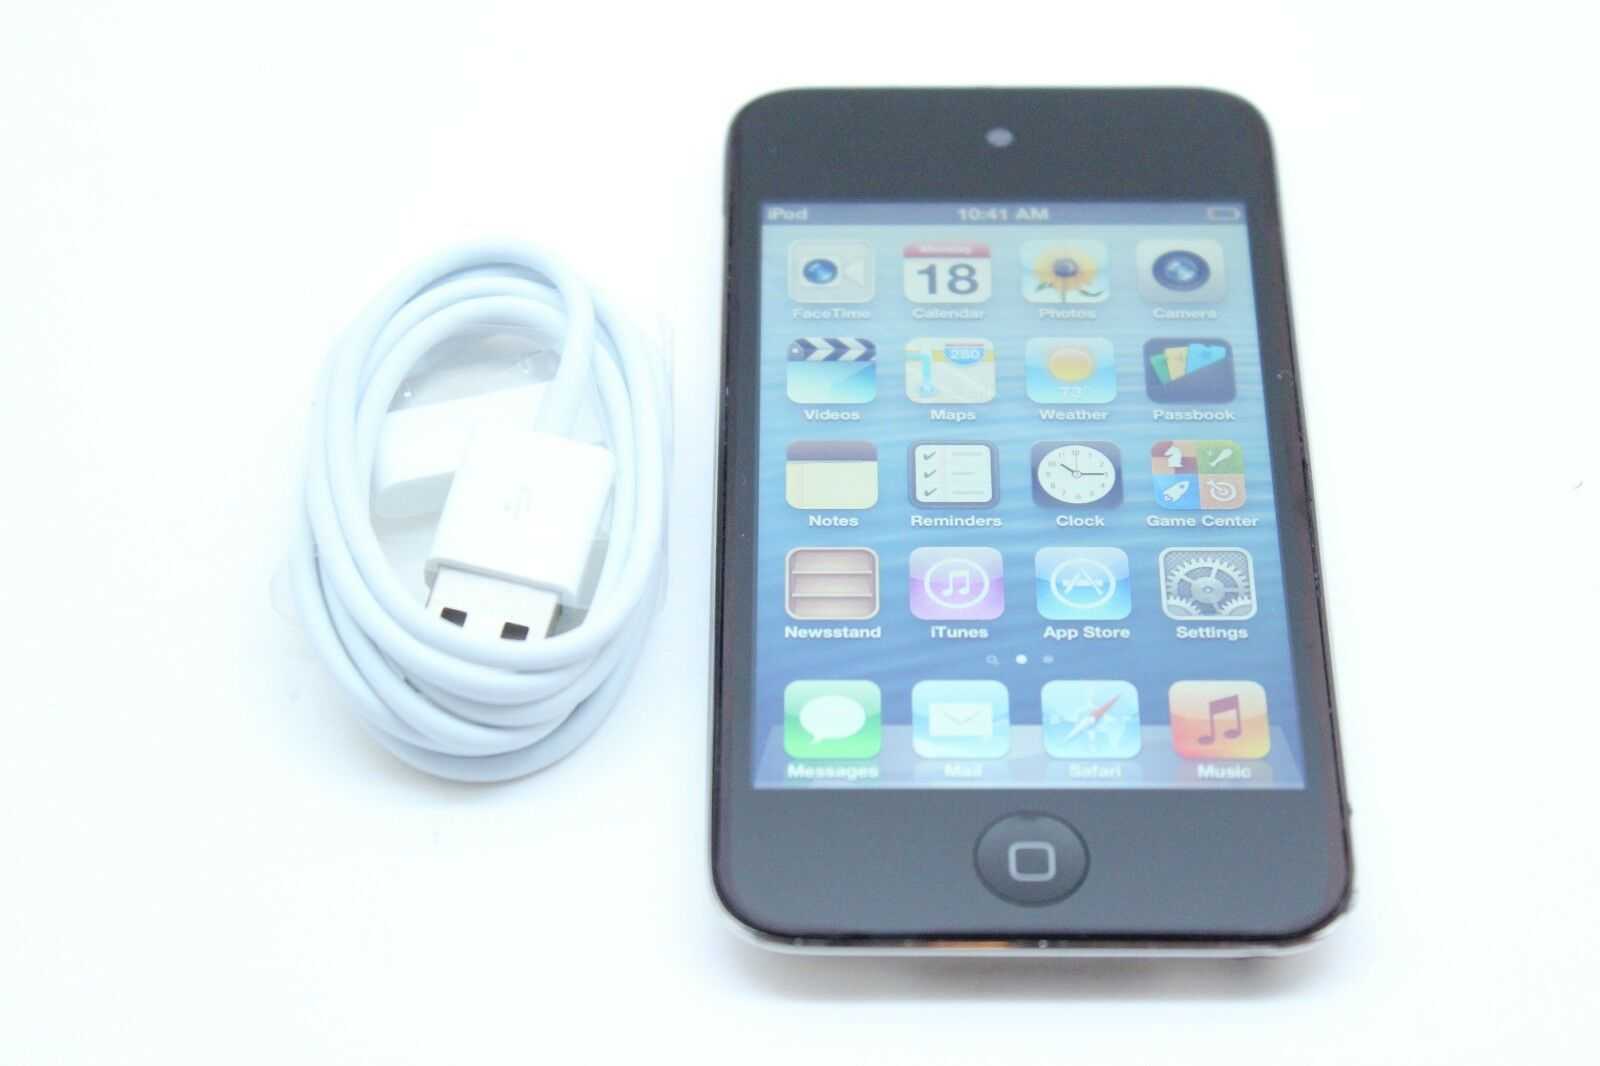 MP3-плеера Apple iPod touch 4 8Gb - подробные характеристики обзоры видео фото Цены в интернет-магазинах где можно купить mp3-плееру Apple iPod touch 4 8Gb